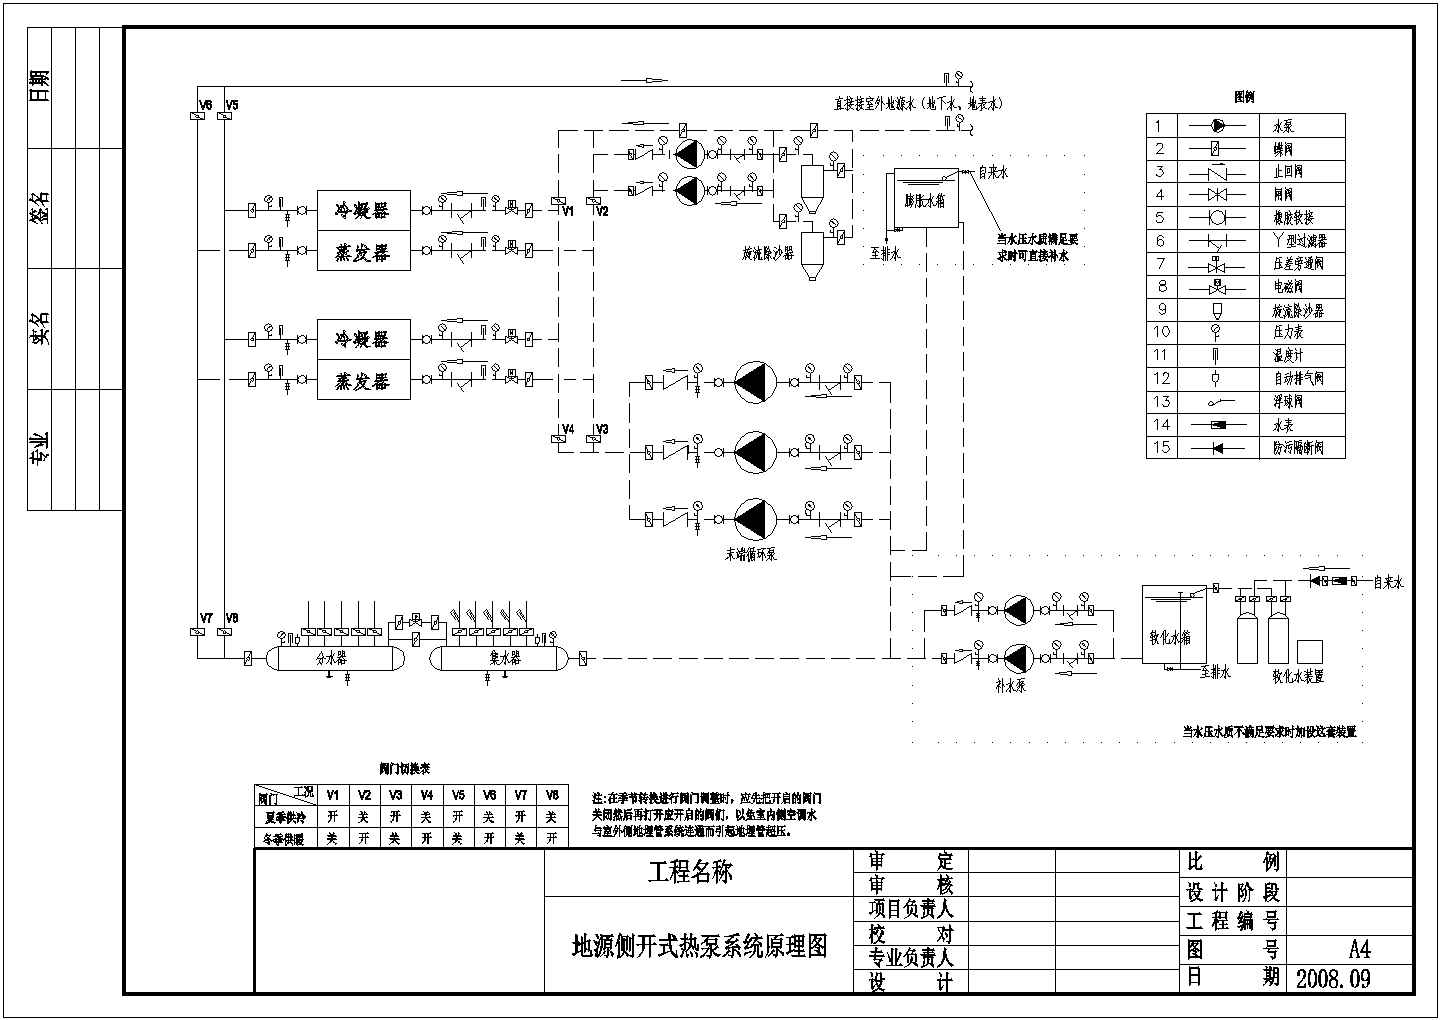 地源热泵系统原理图(开式、间接利用式) 通风空调图纸